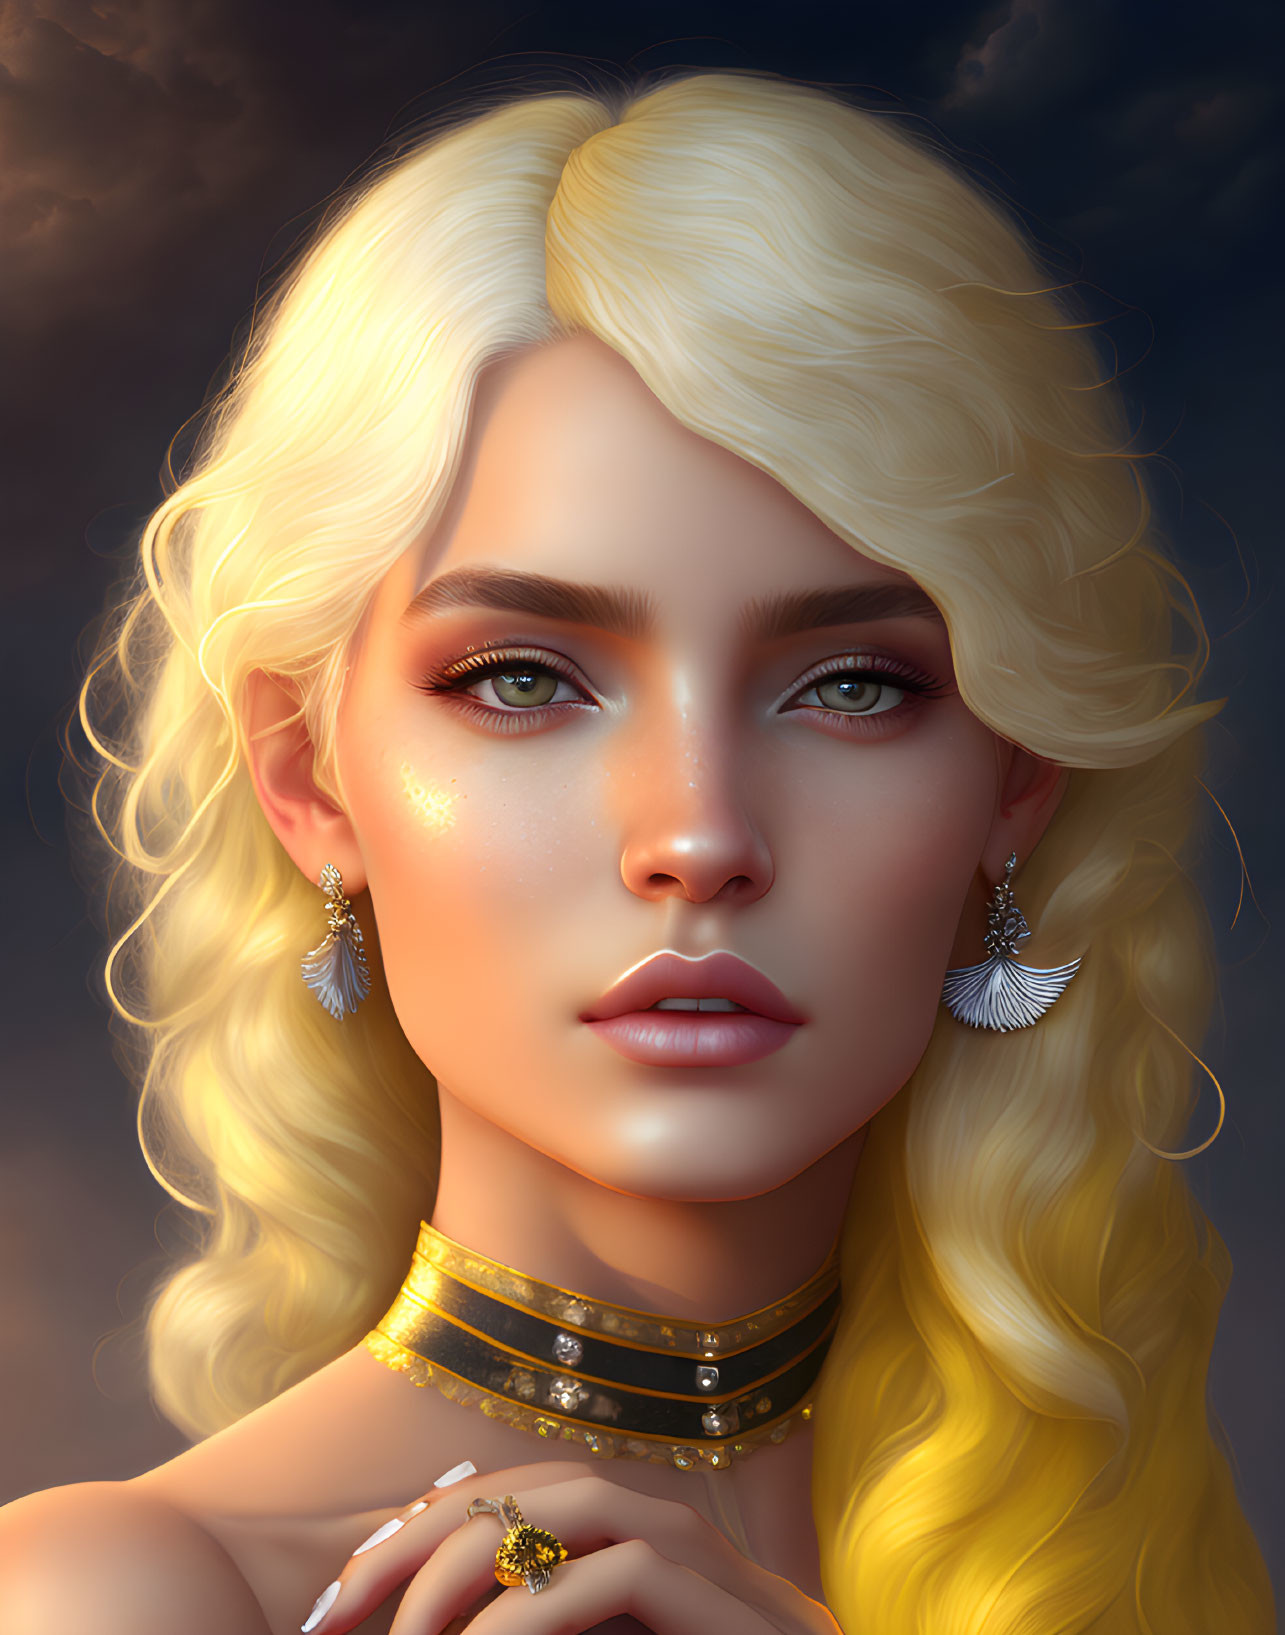 Blonde woman with green eyes in digital portrait wearing golden jewelry